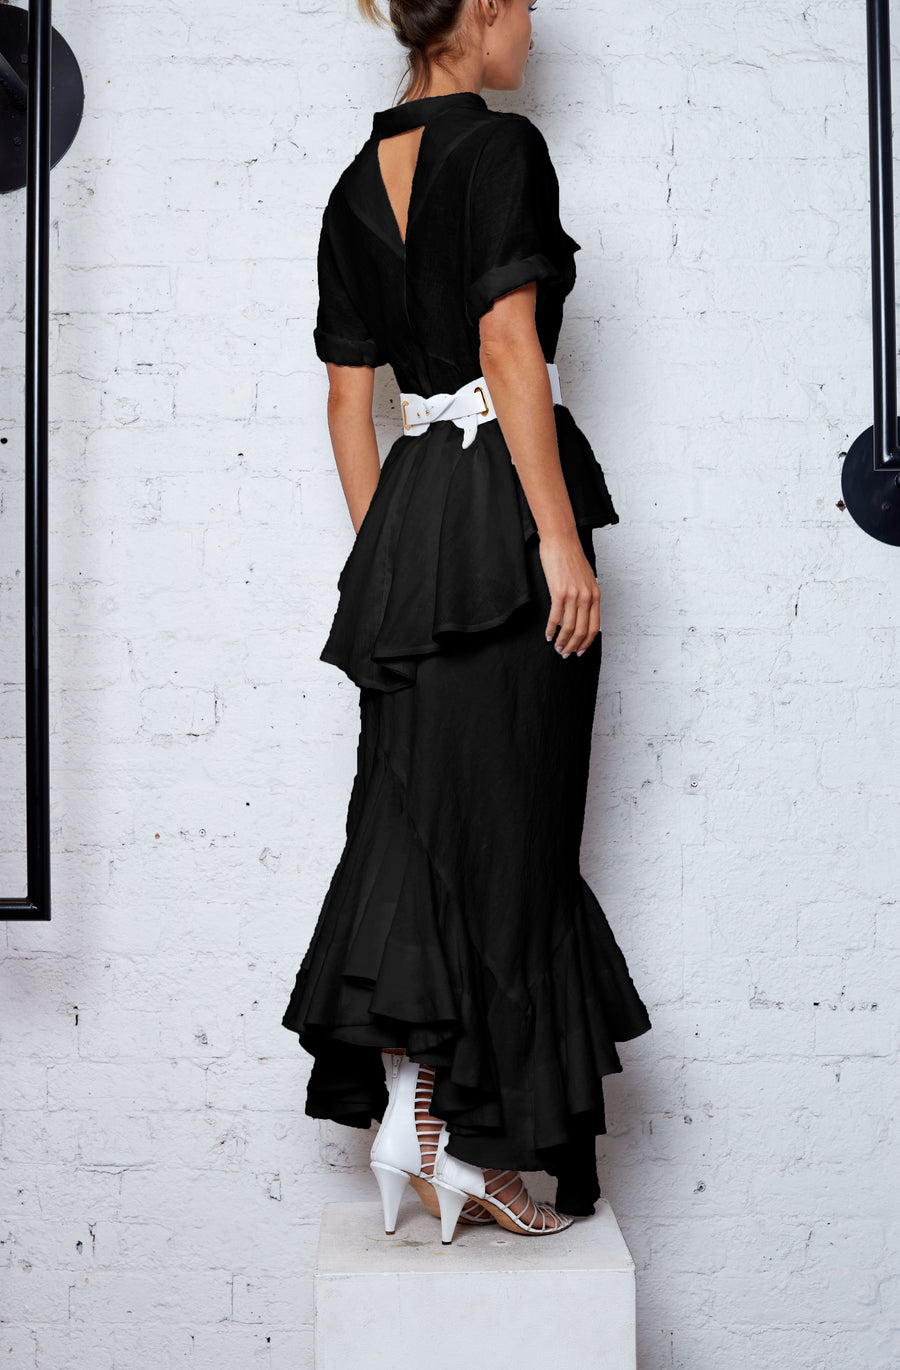 Linen Skirt - Black